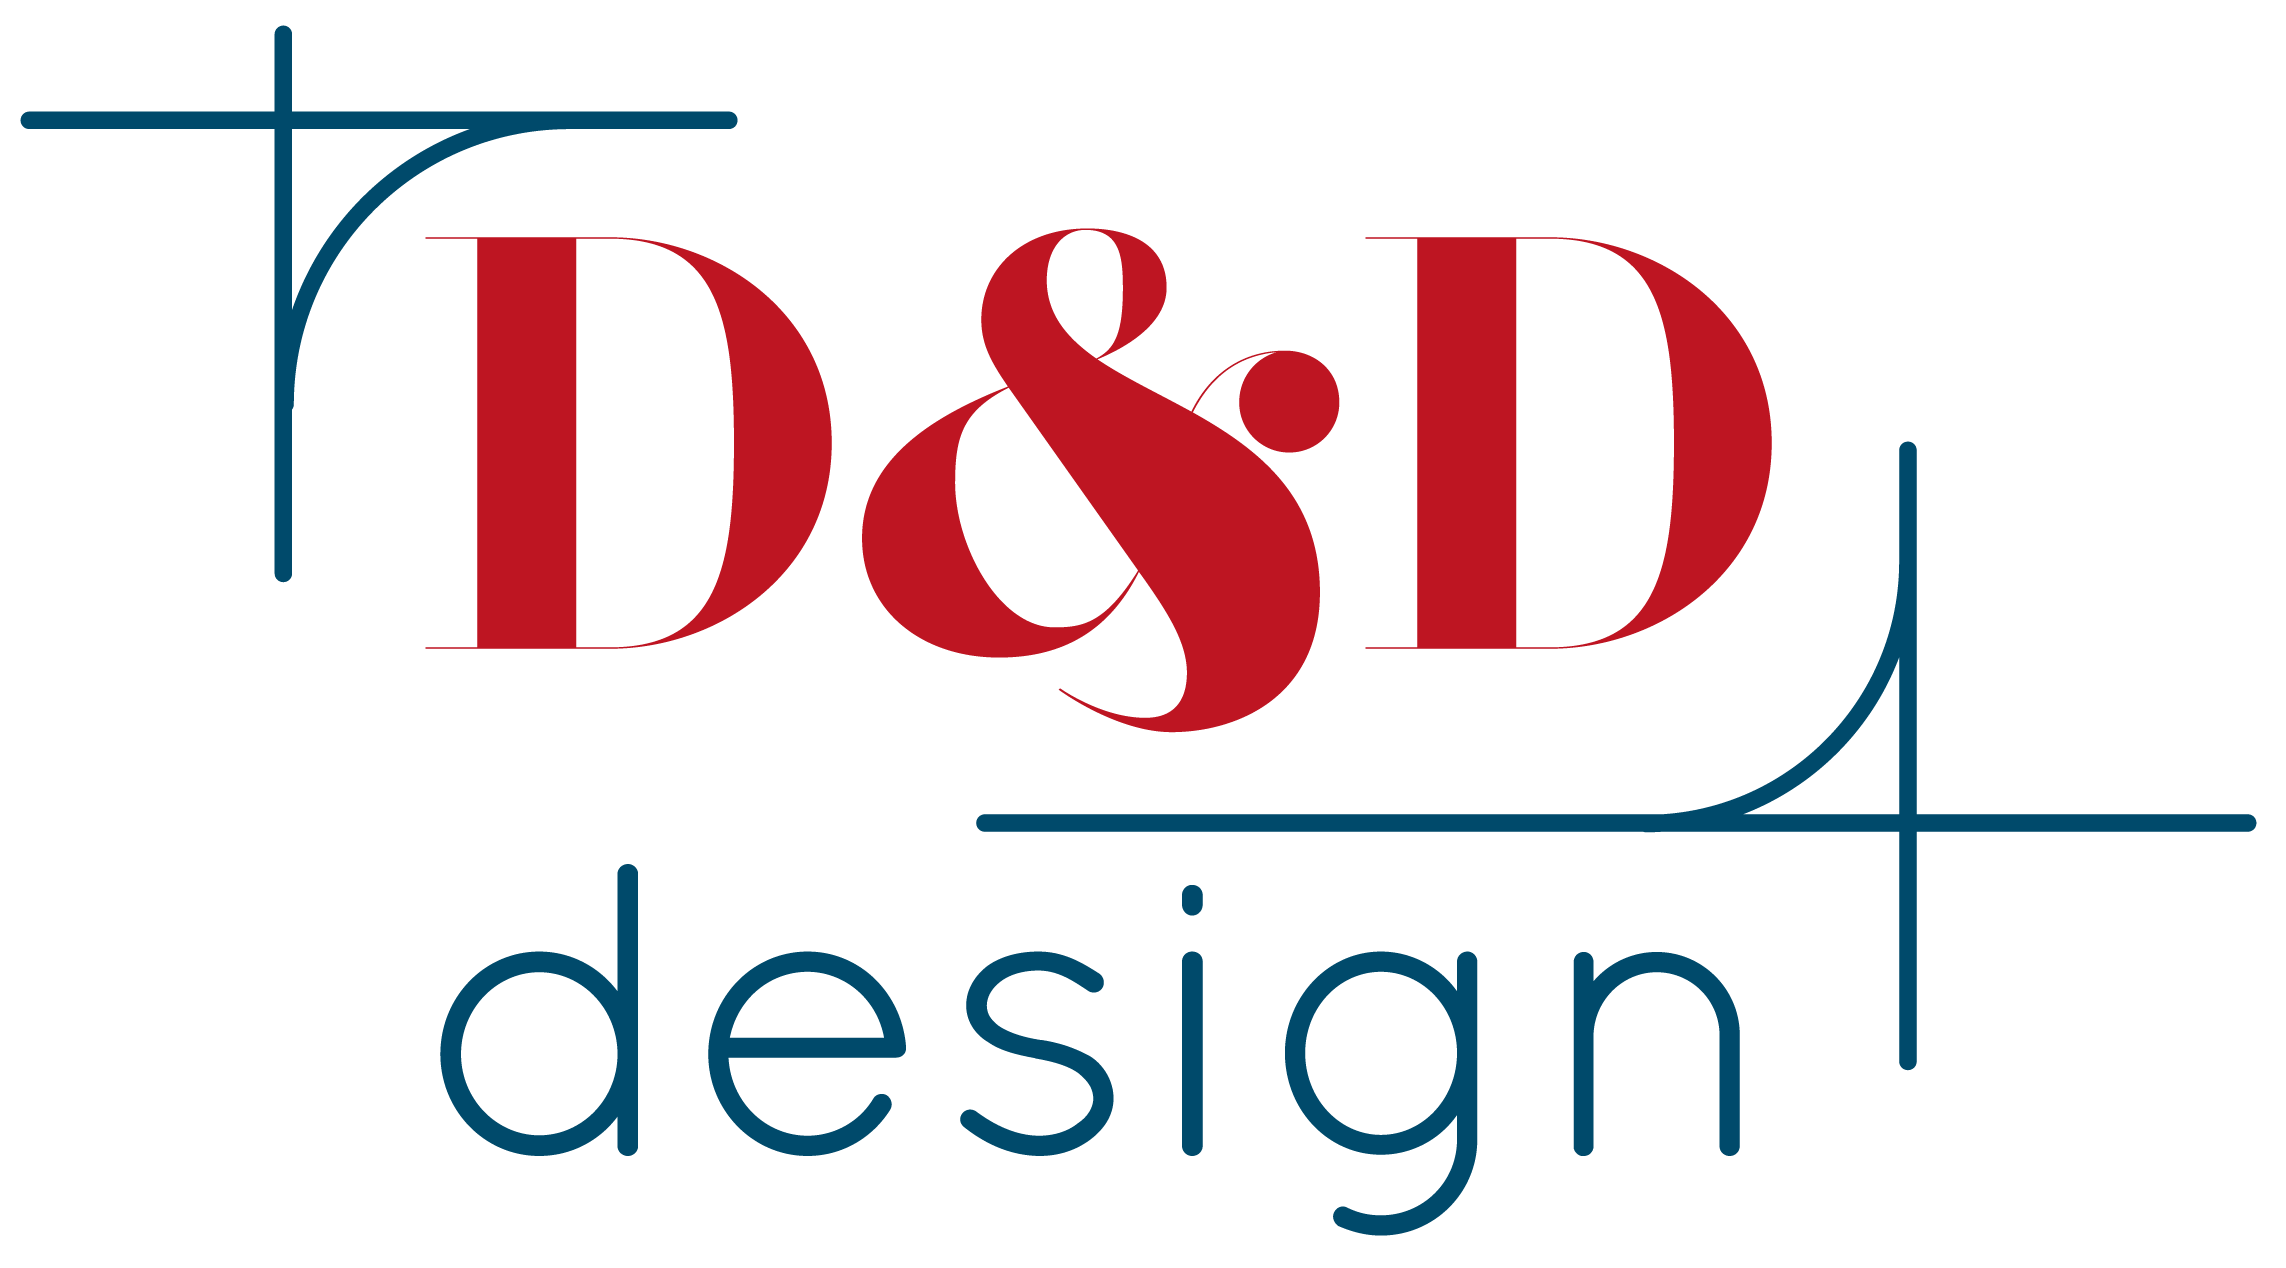 D&D Design